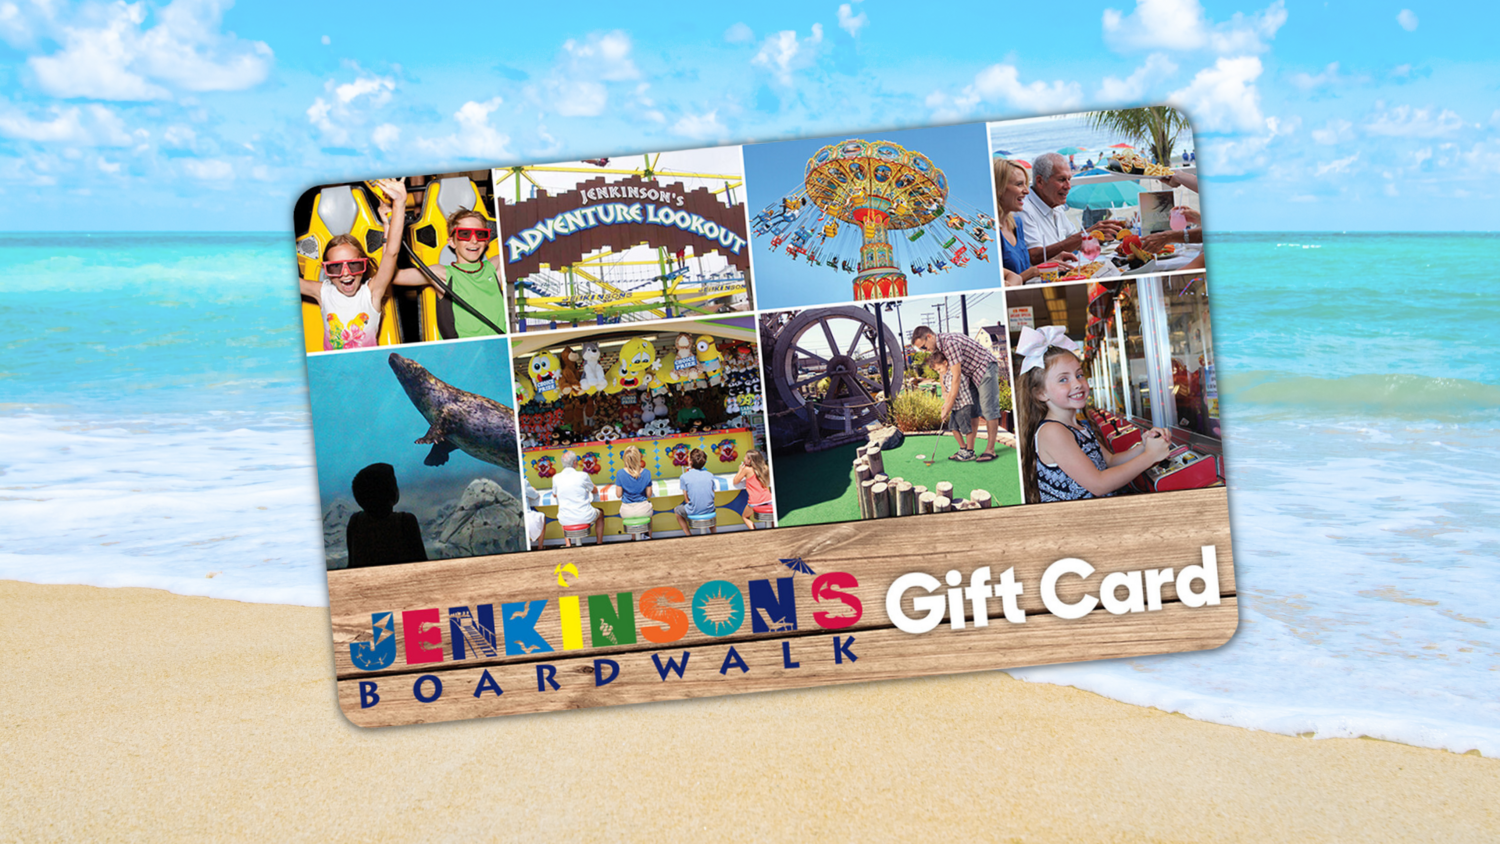 Jenkinson's Boardwalk Gift Cards $10-$100